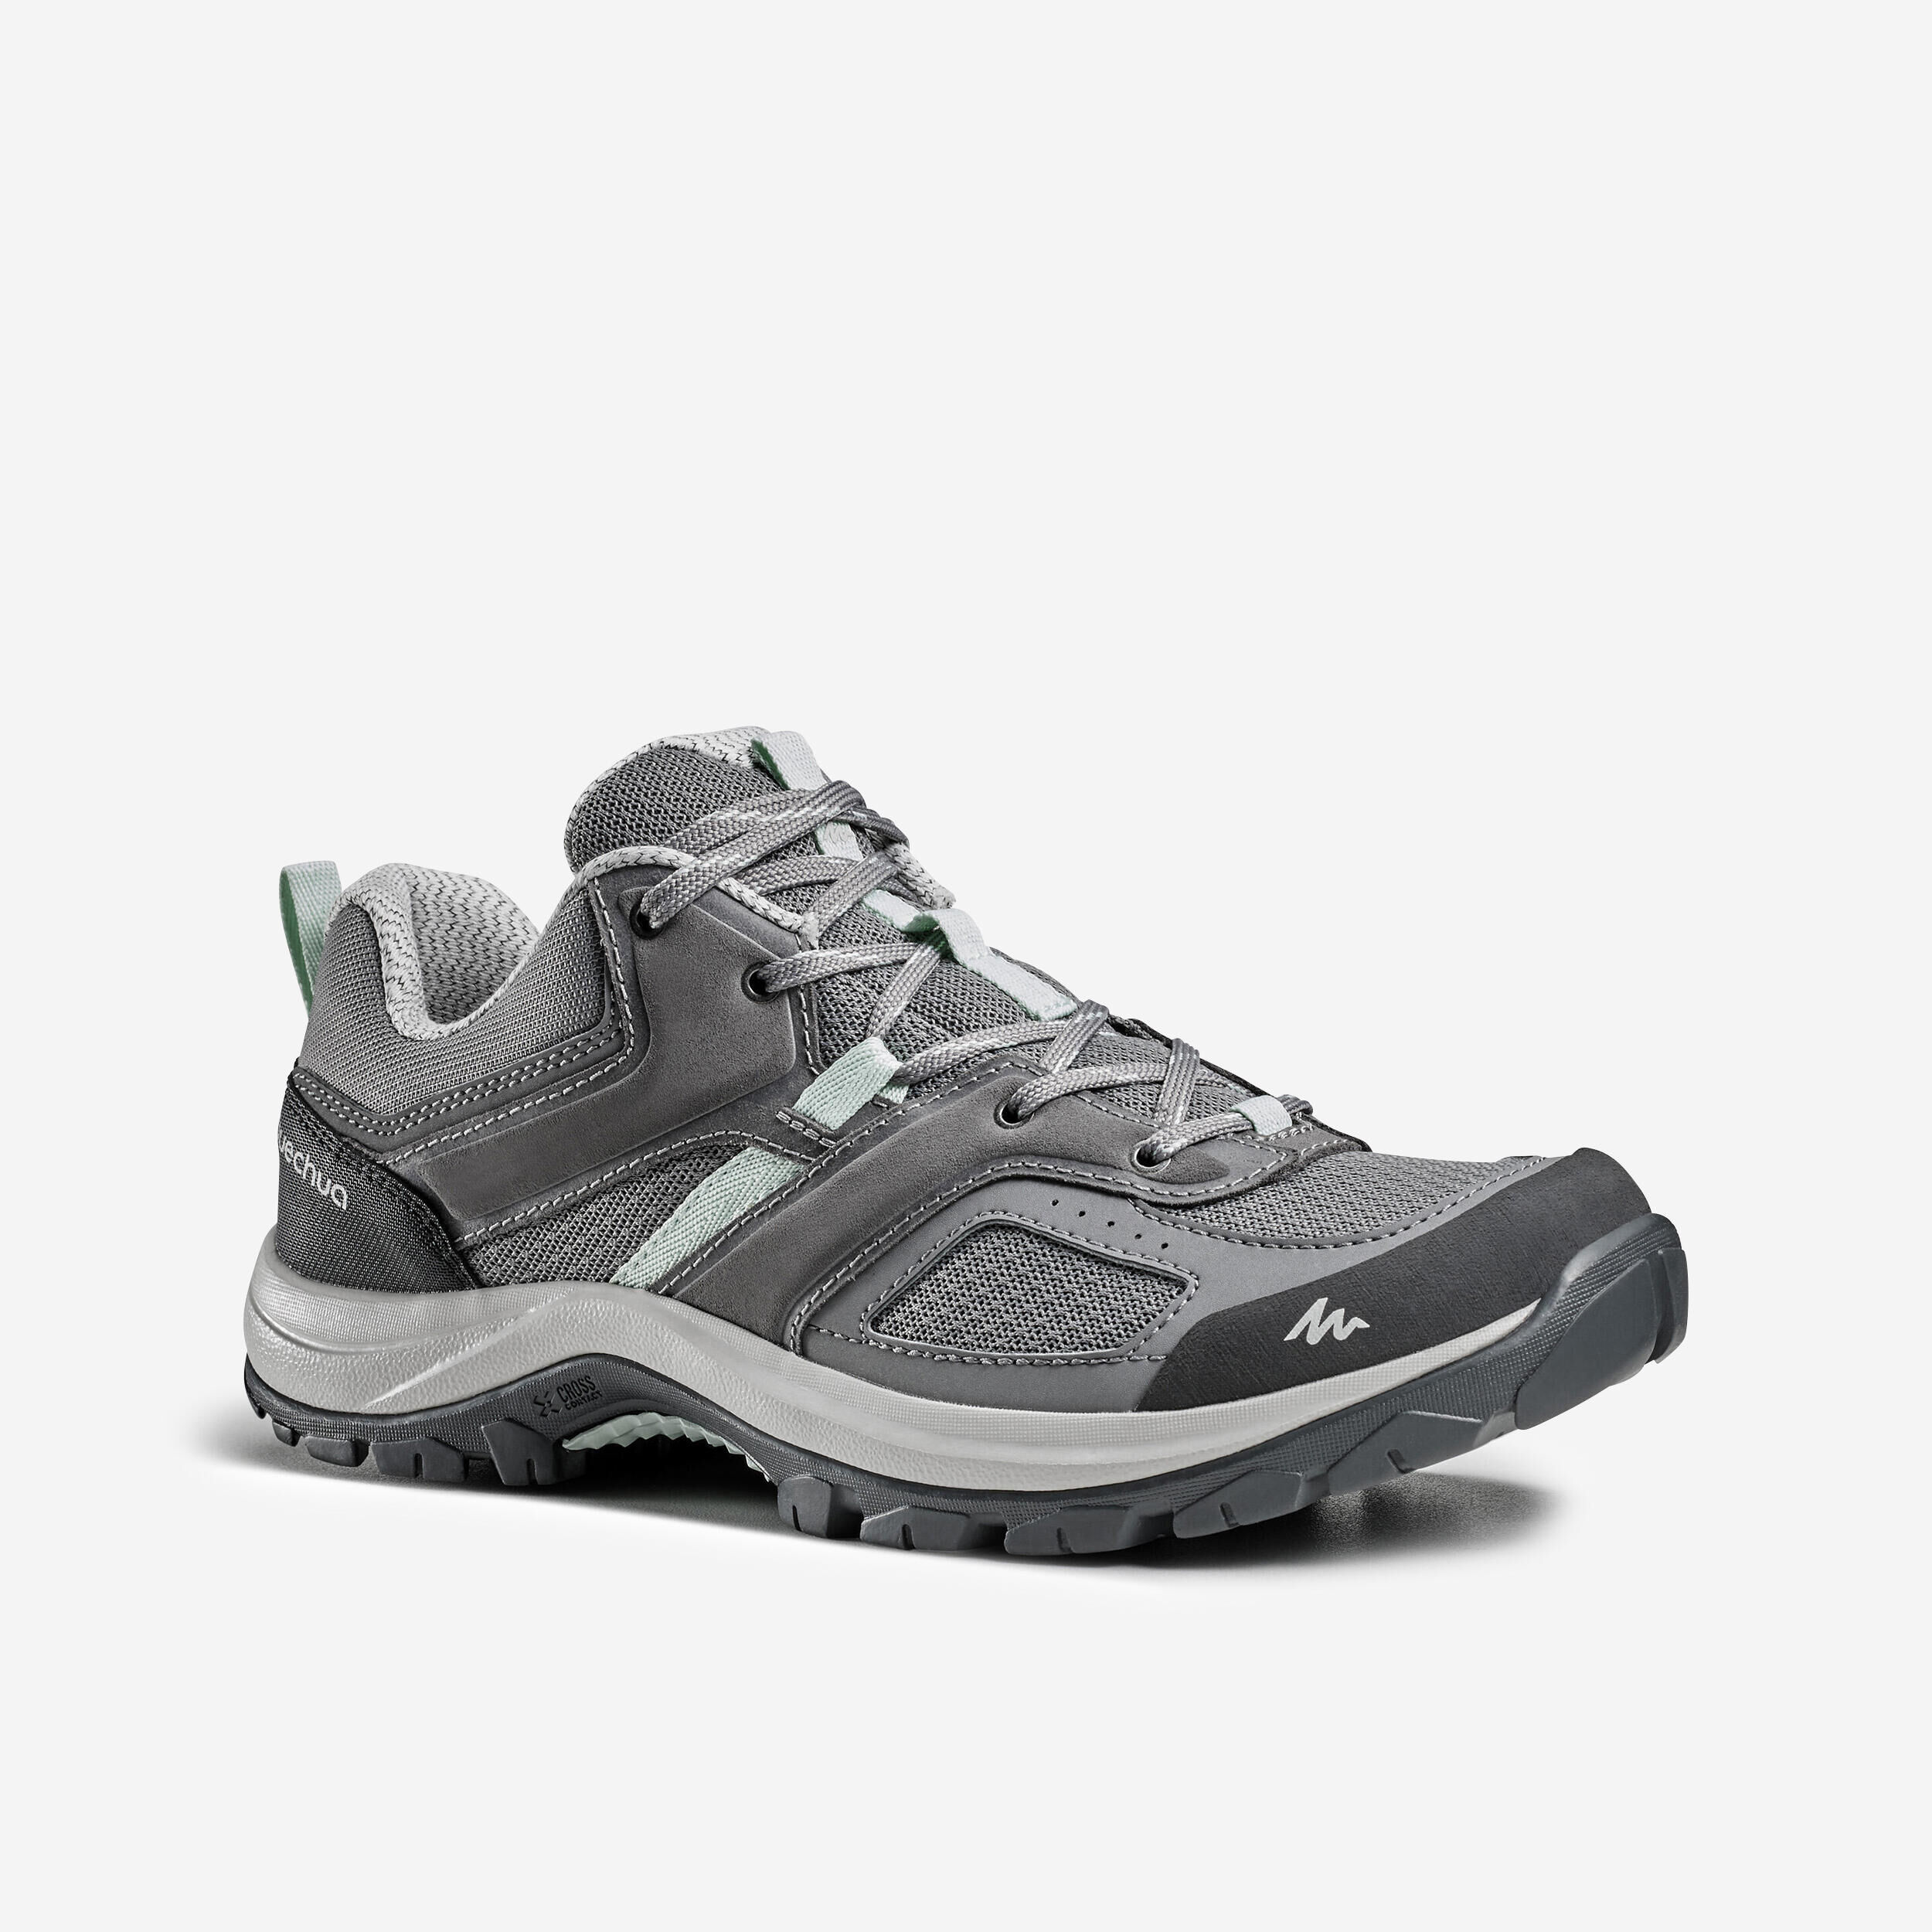 QUECHUA Women's mountain walking shoes - MH100 - Grey/Green